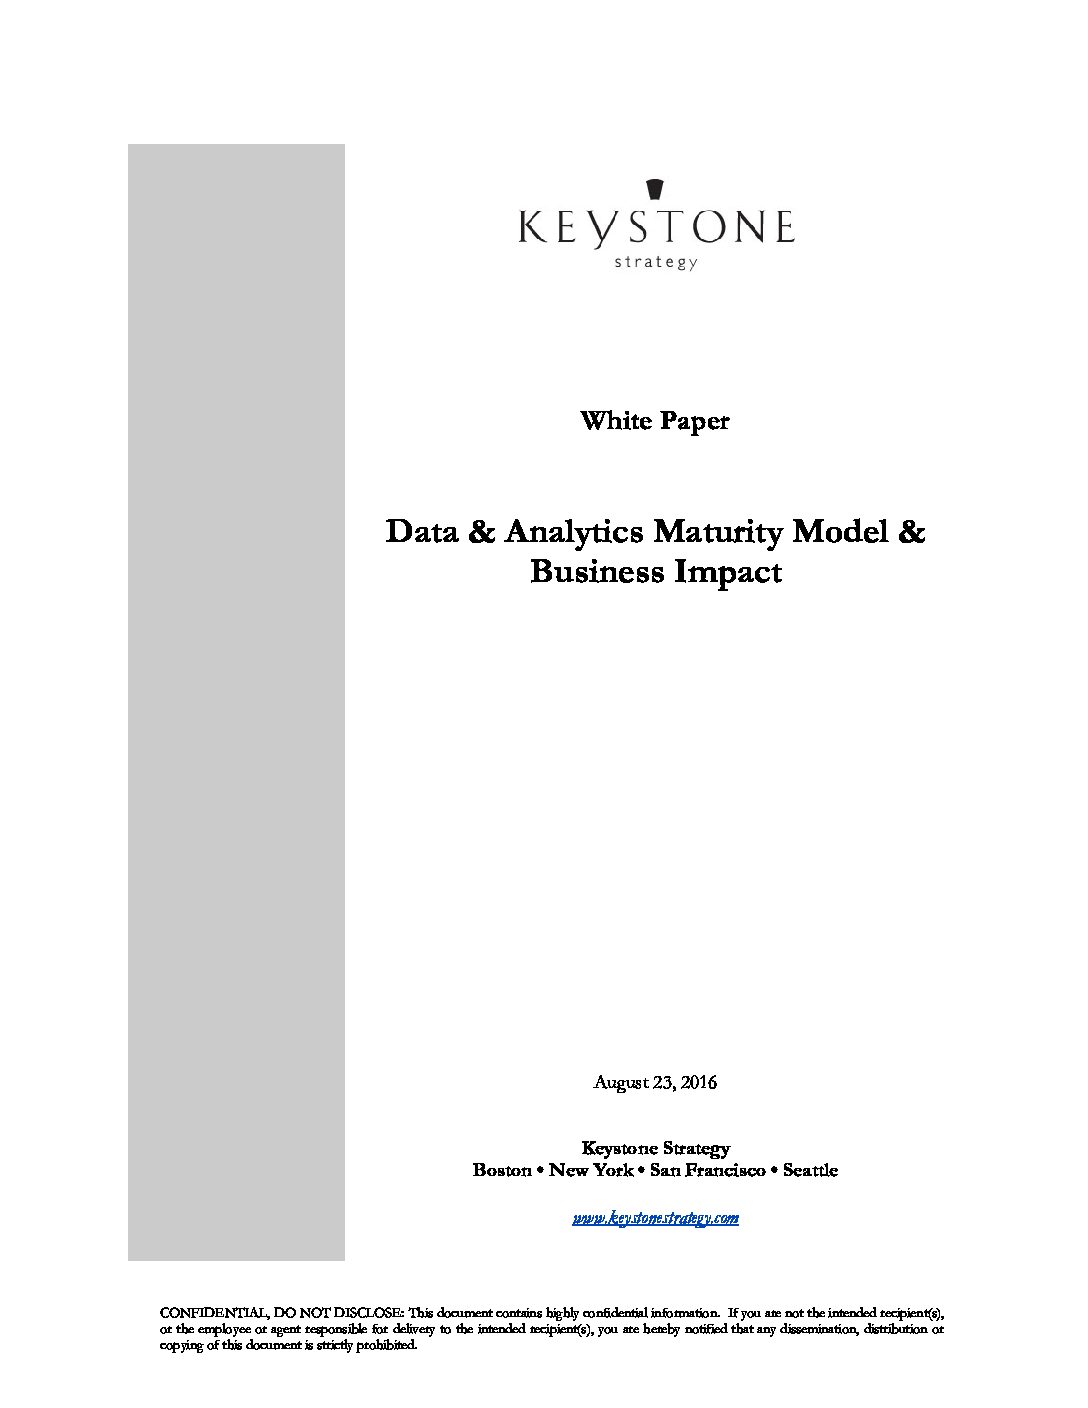 Data & Analytics Maturity Model & Business Impact